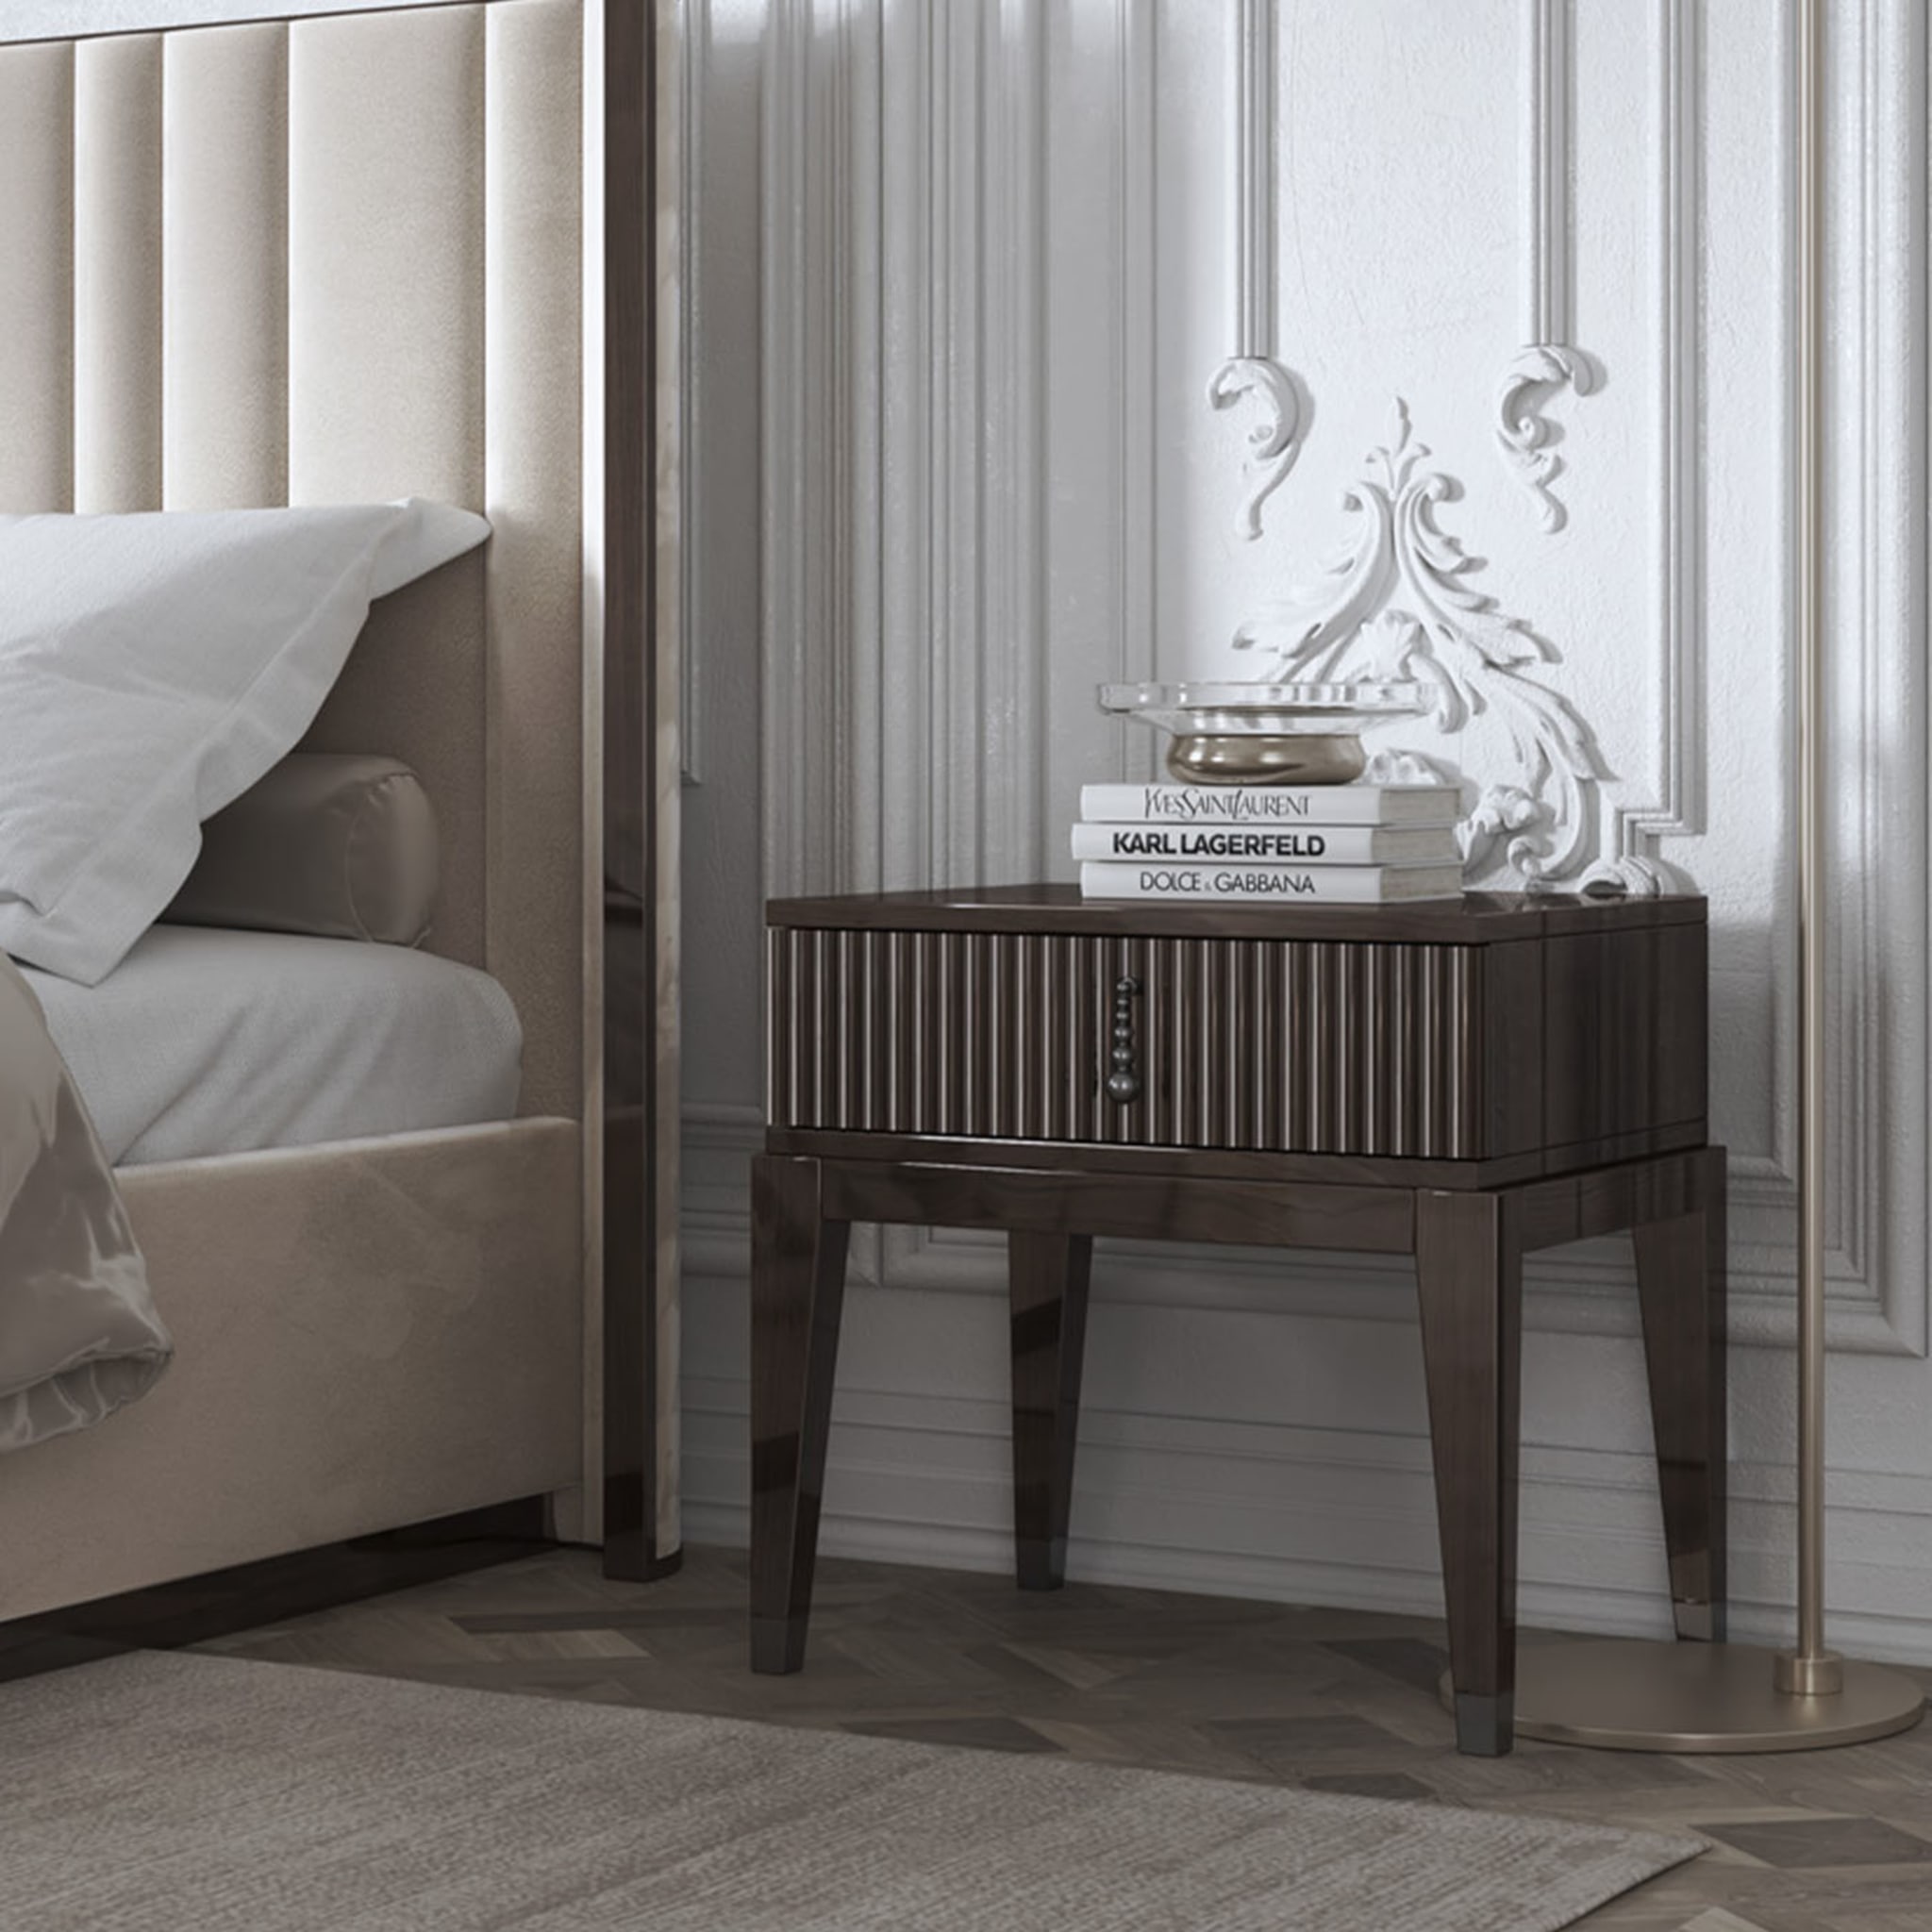  Saga 140 Italian Curved Bed Upholstered In Velvet Fabric - Alternative view 1